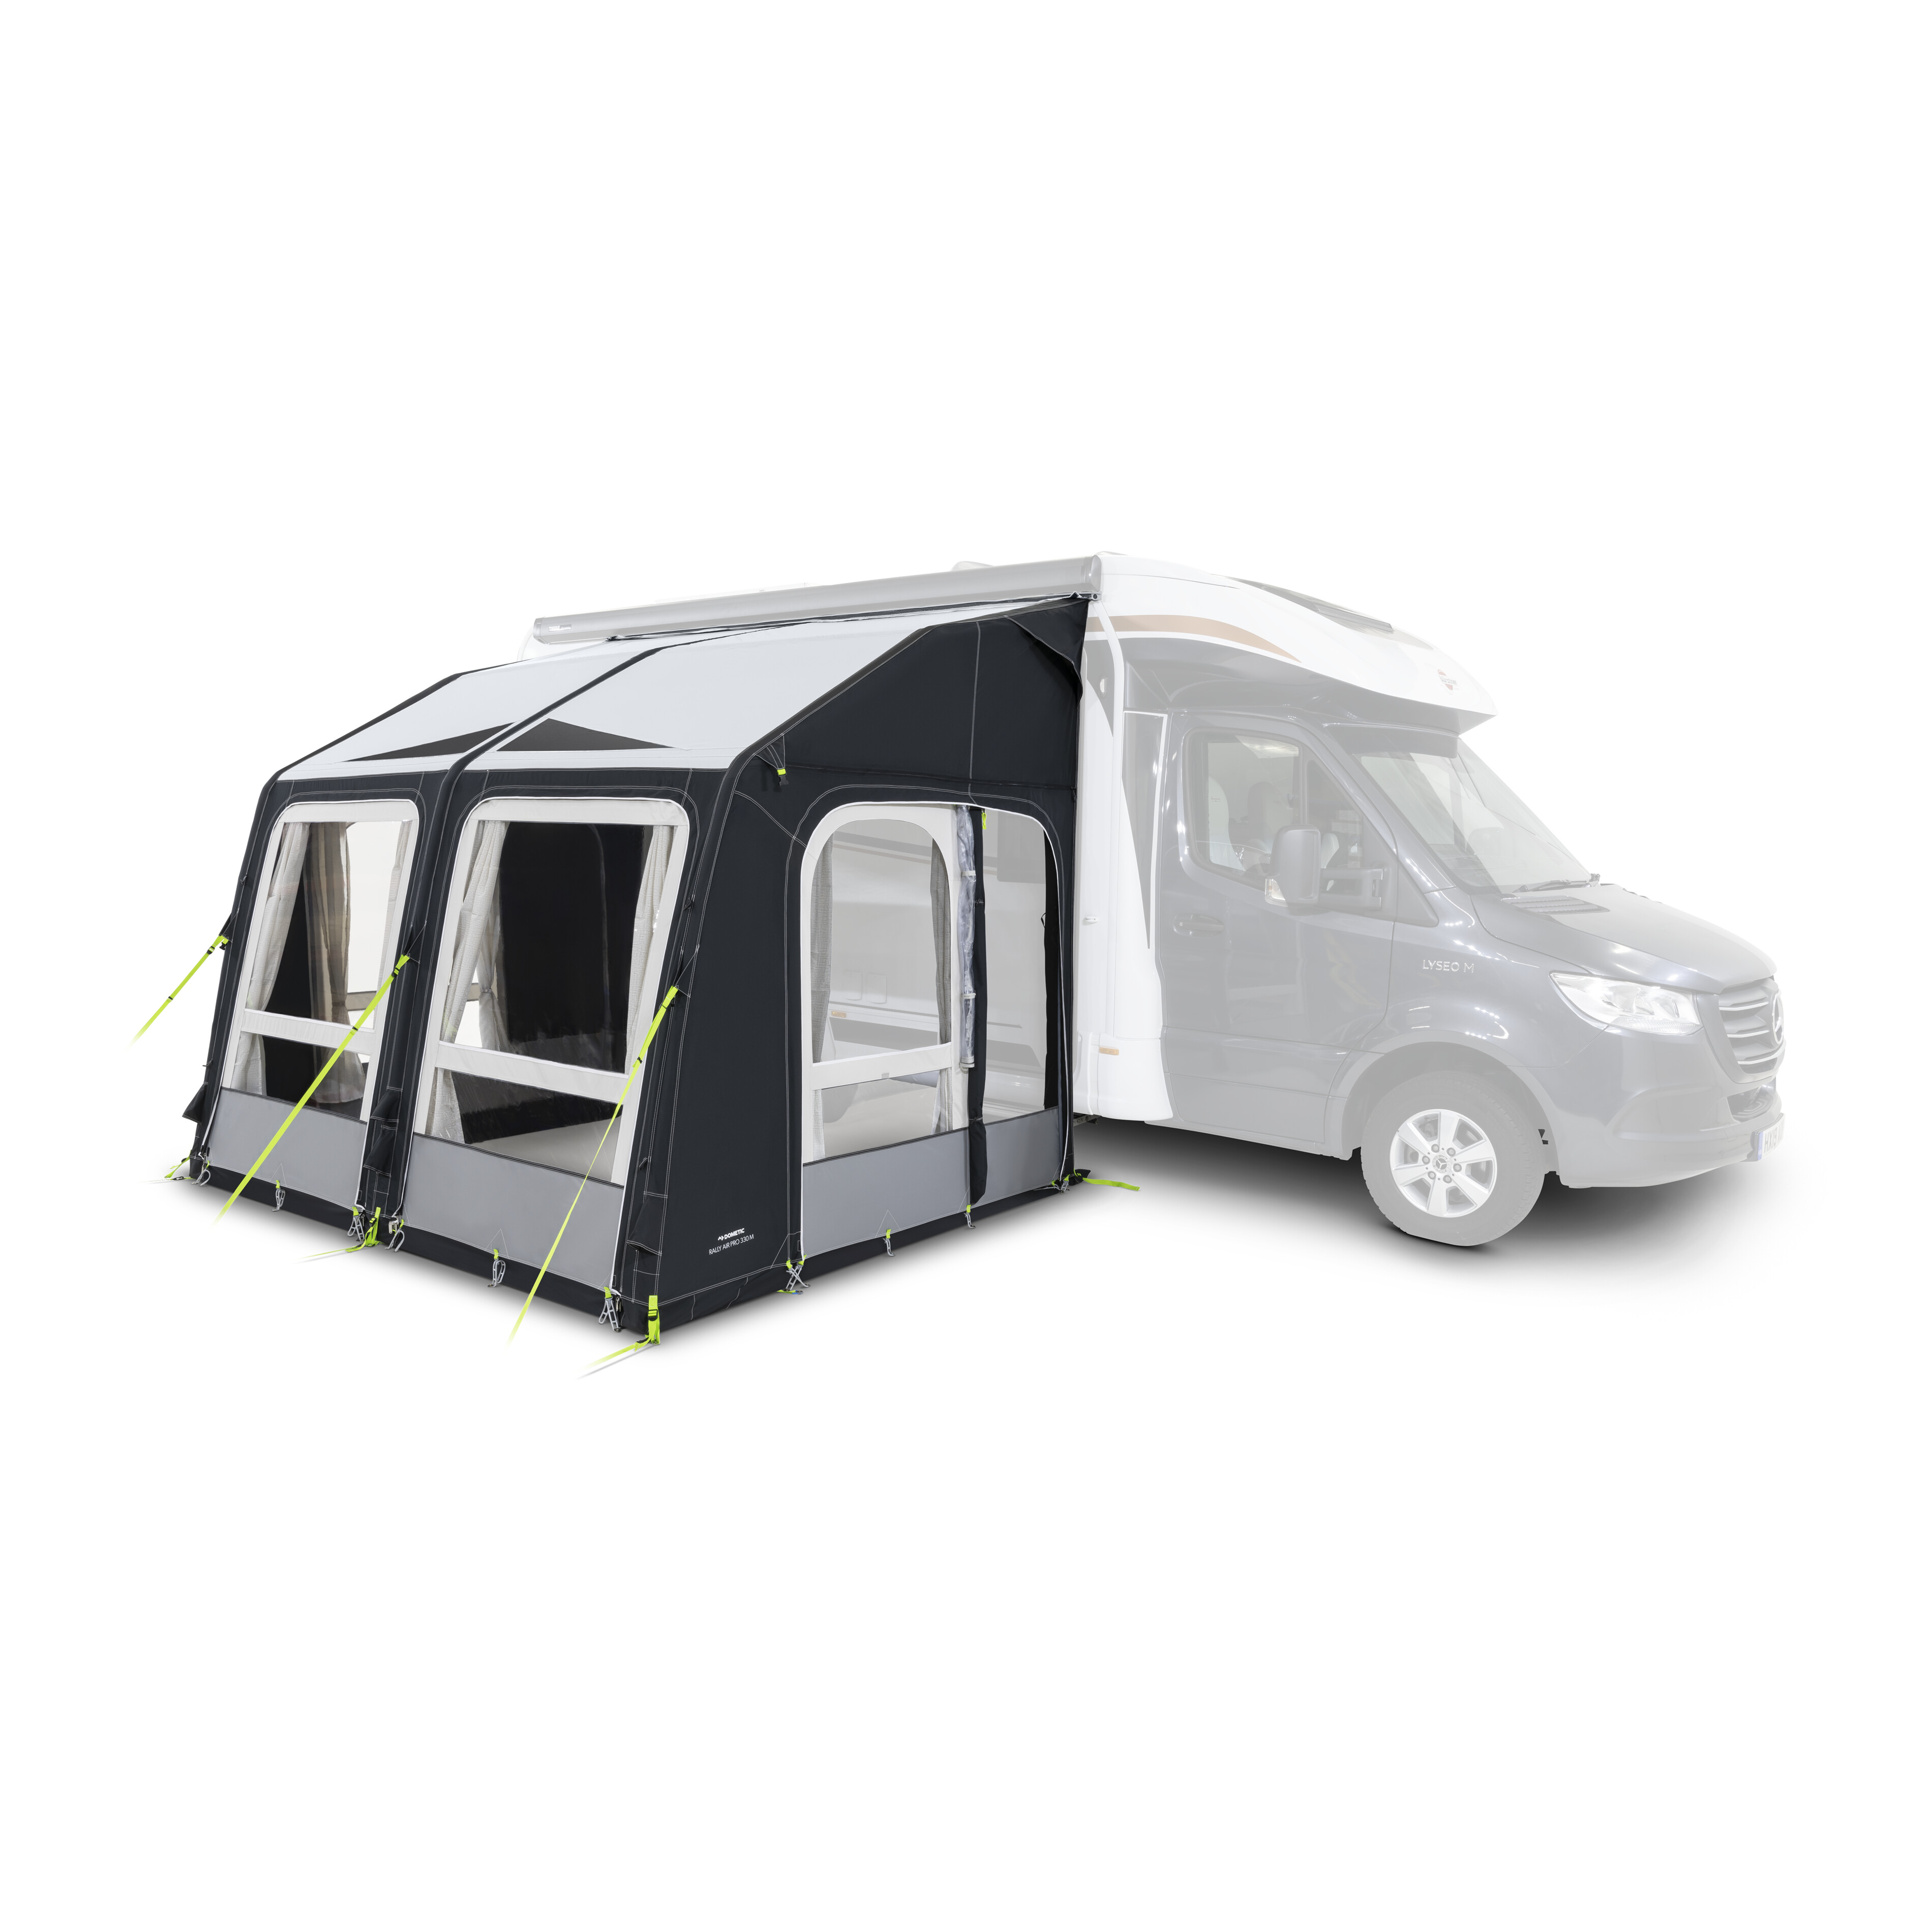 Dometic présente son nouveau système de ventilation pour camping-cars -  Équipements et accessoires